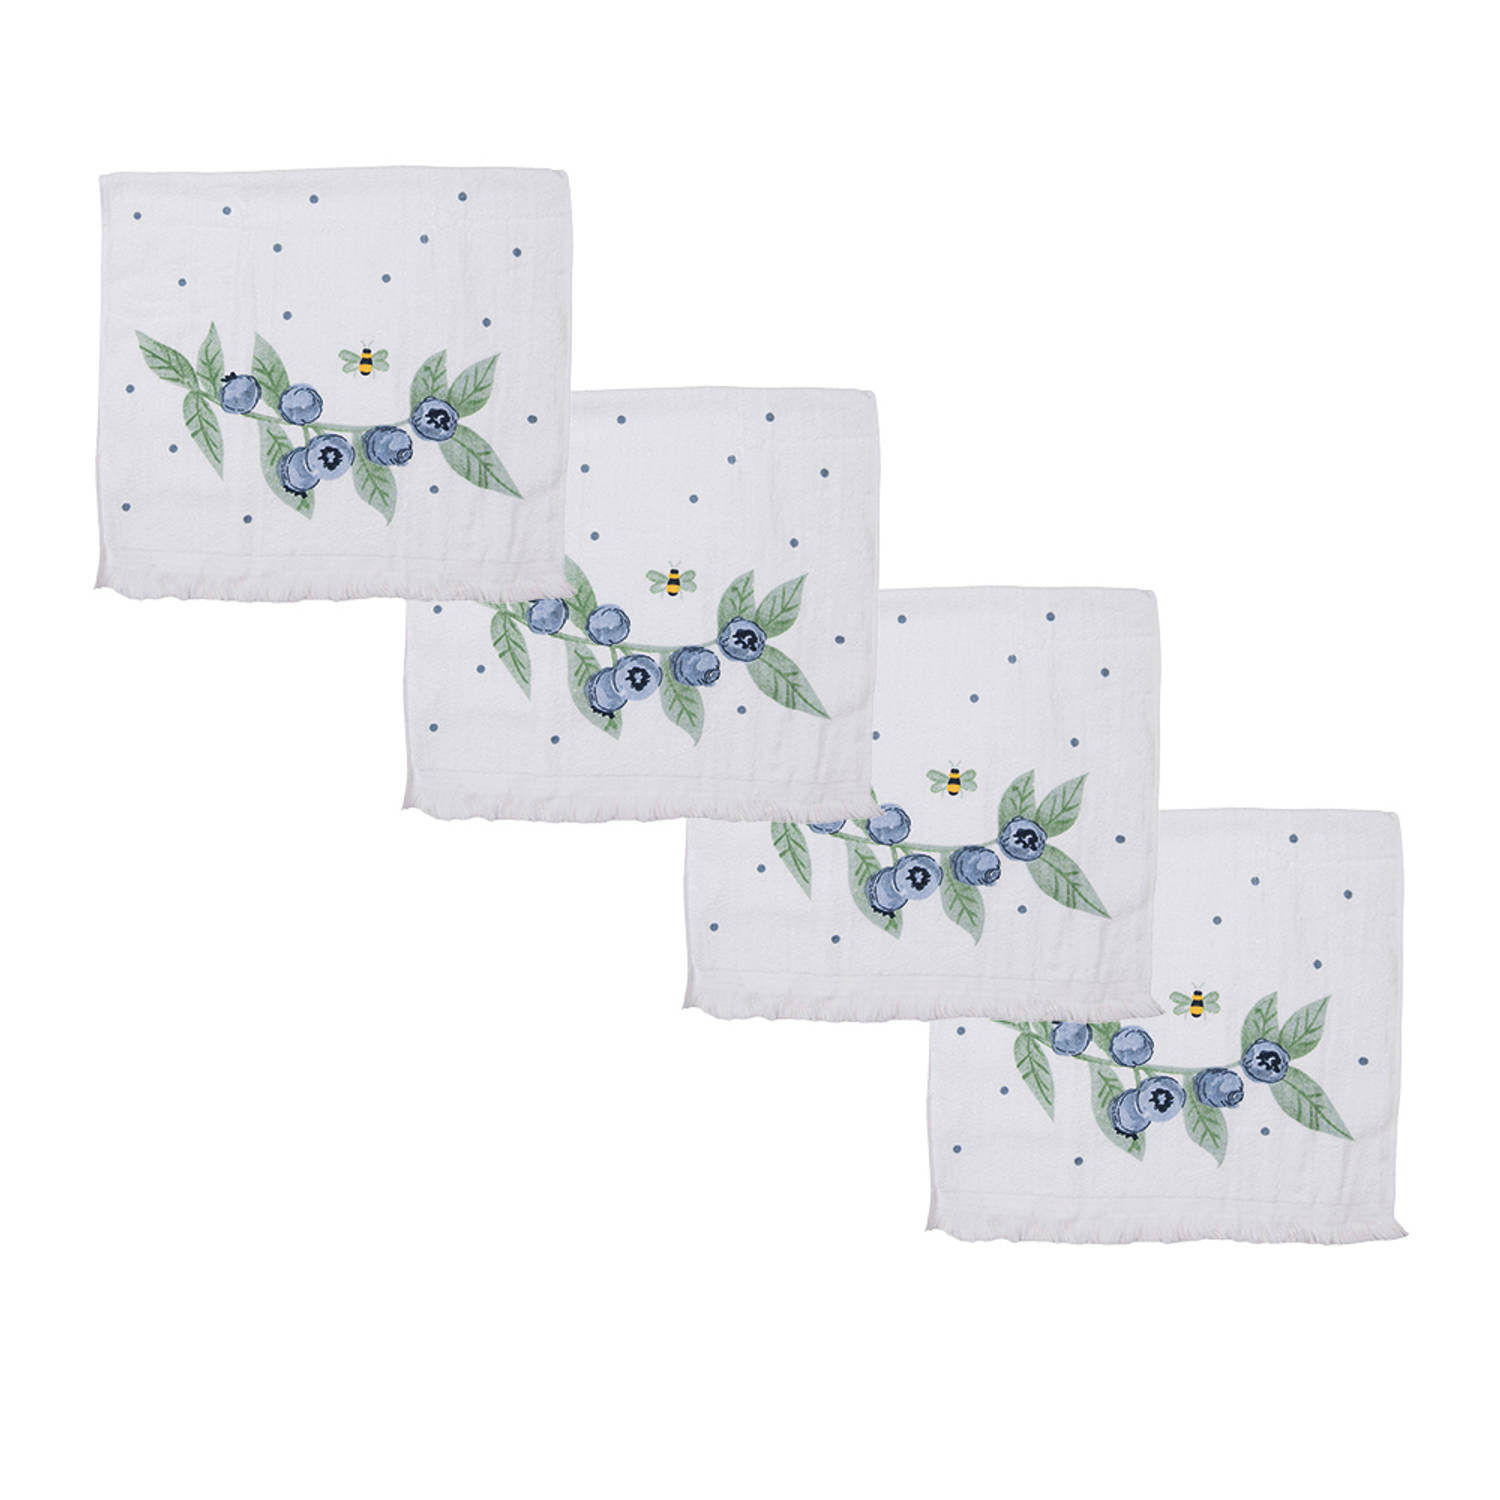 HAES DECO - Set van 4 Gastendoeken - formaat 40x66 cm - kleuren Beige / Blauw / Groen - van 100% Katoen - Collectie: Blueberry Fields - Gastendoek / handdoek / Toilethanddoek